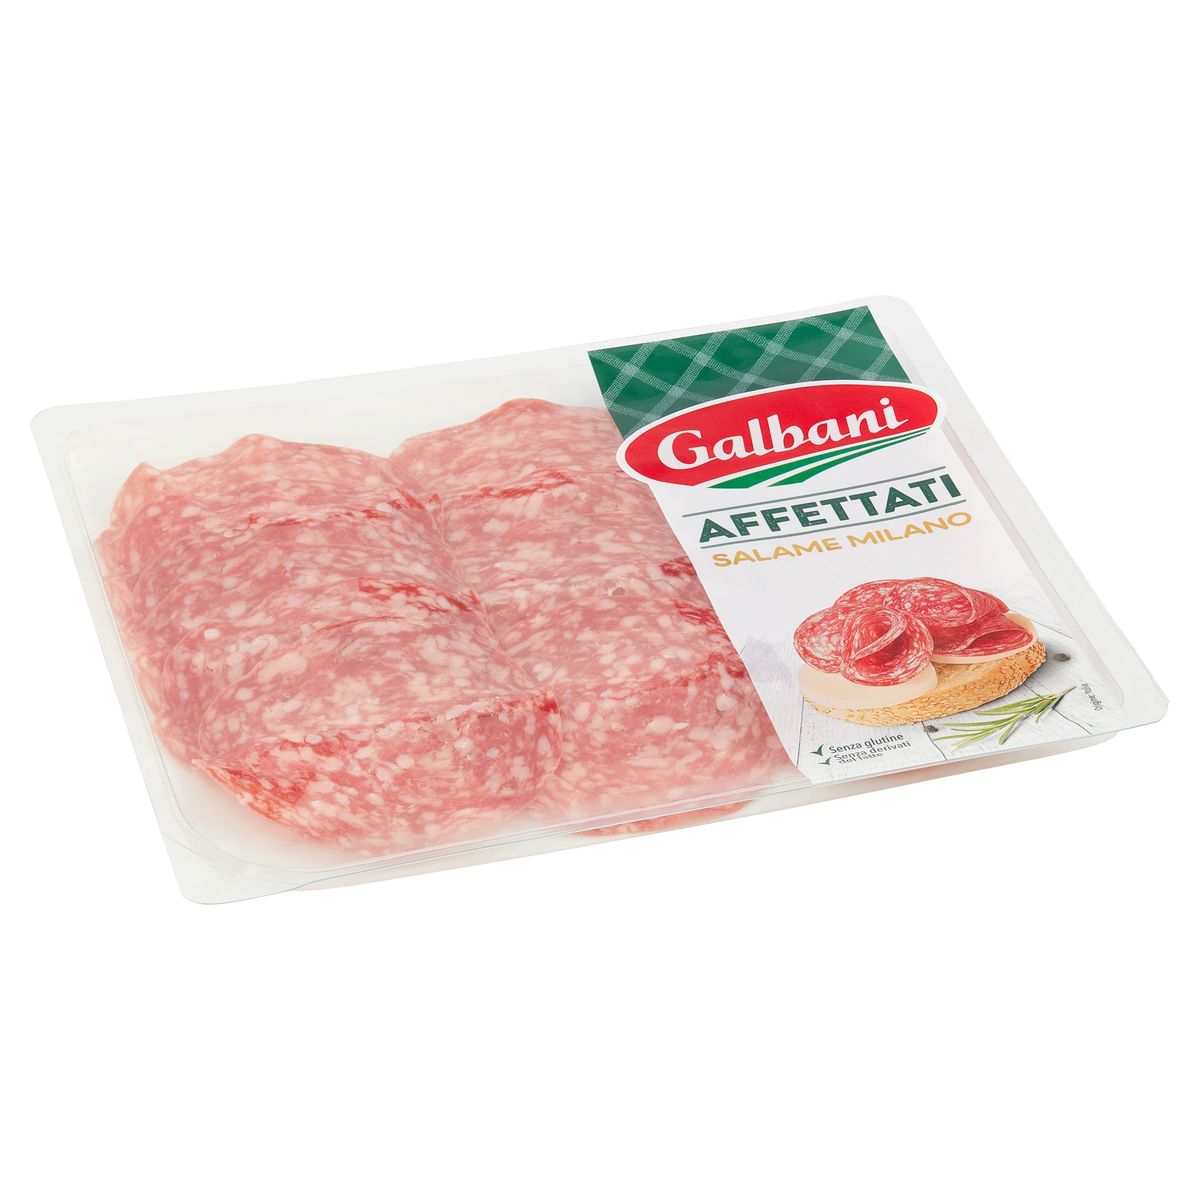 Galbani Affettati Salame Milano 100 g